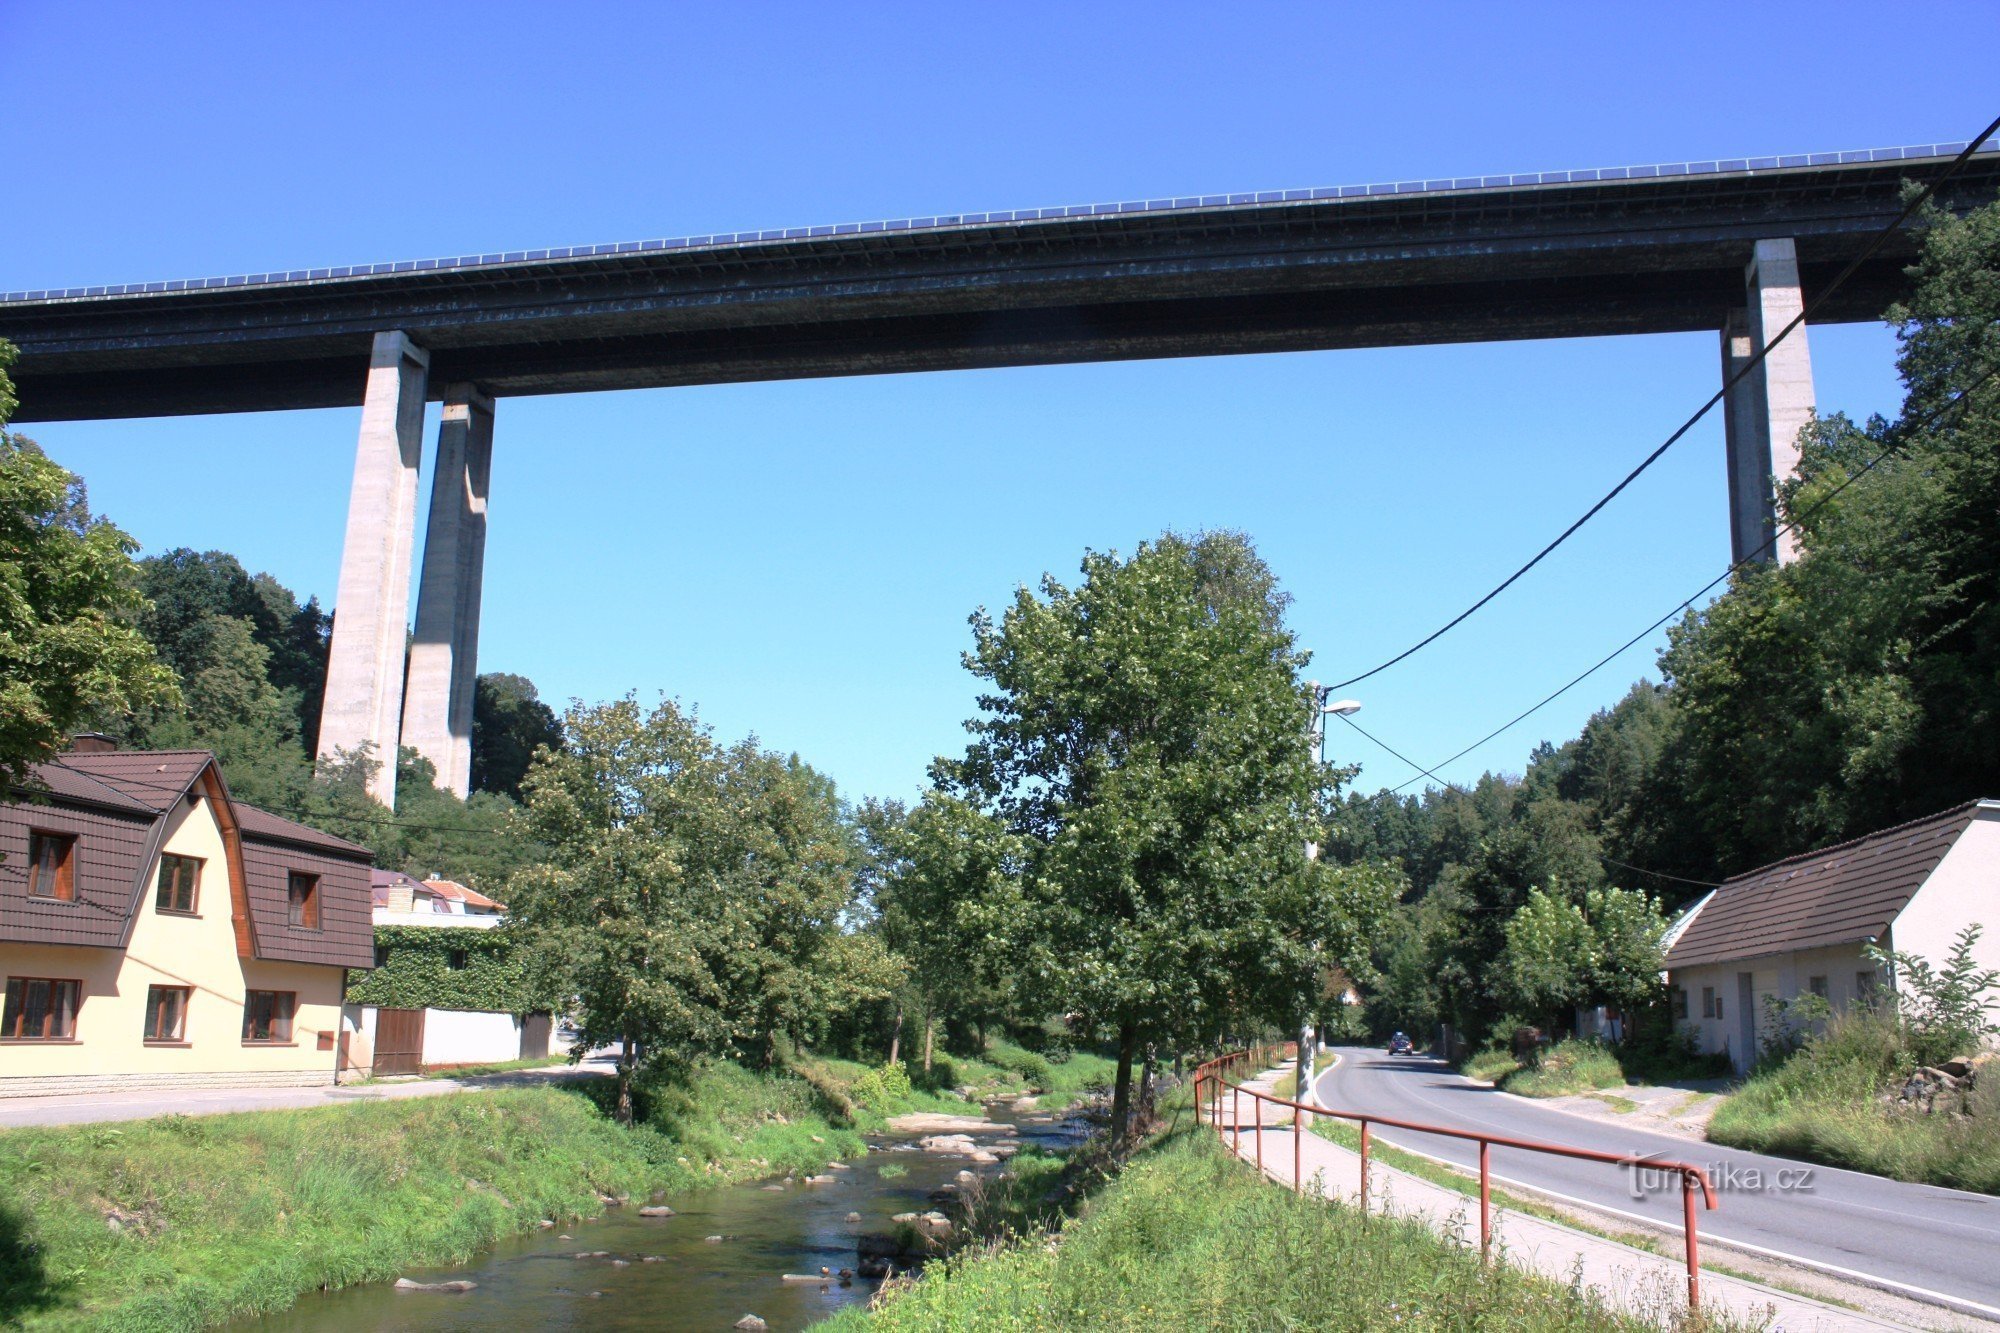 Velké Meziříčí - most autostradowy Vysočina